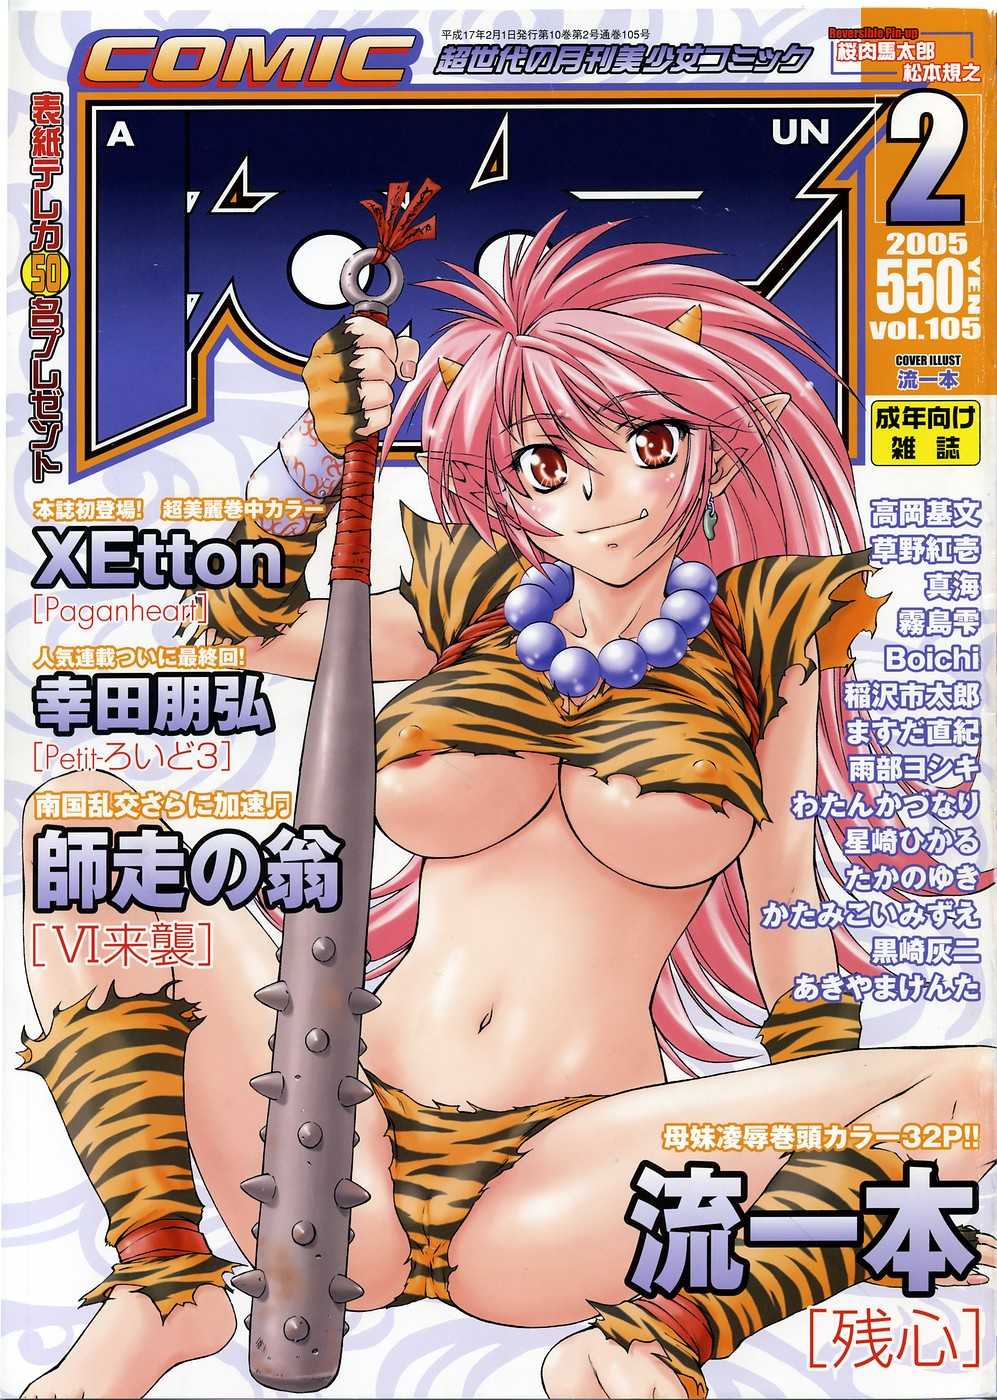 COMIC AUN 2005-02 Vol. 105 COMIC 阿吽 2005年2月号 VOL.105